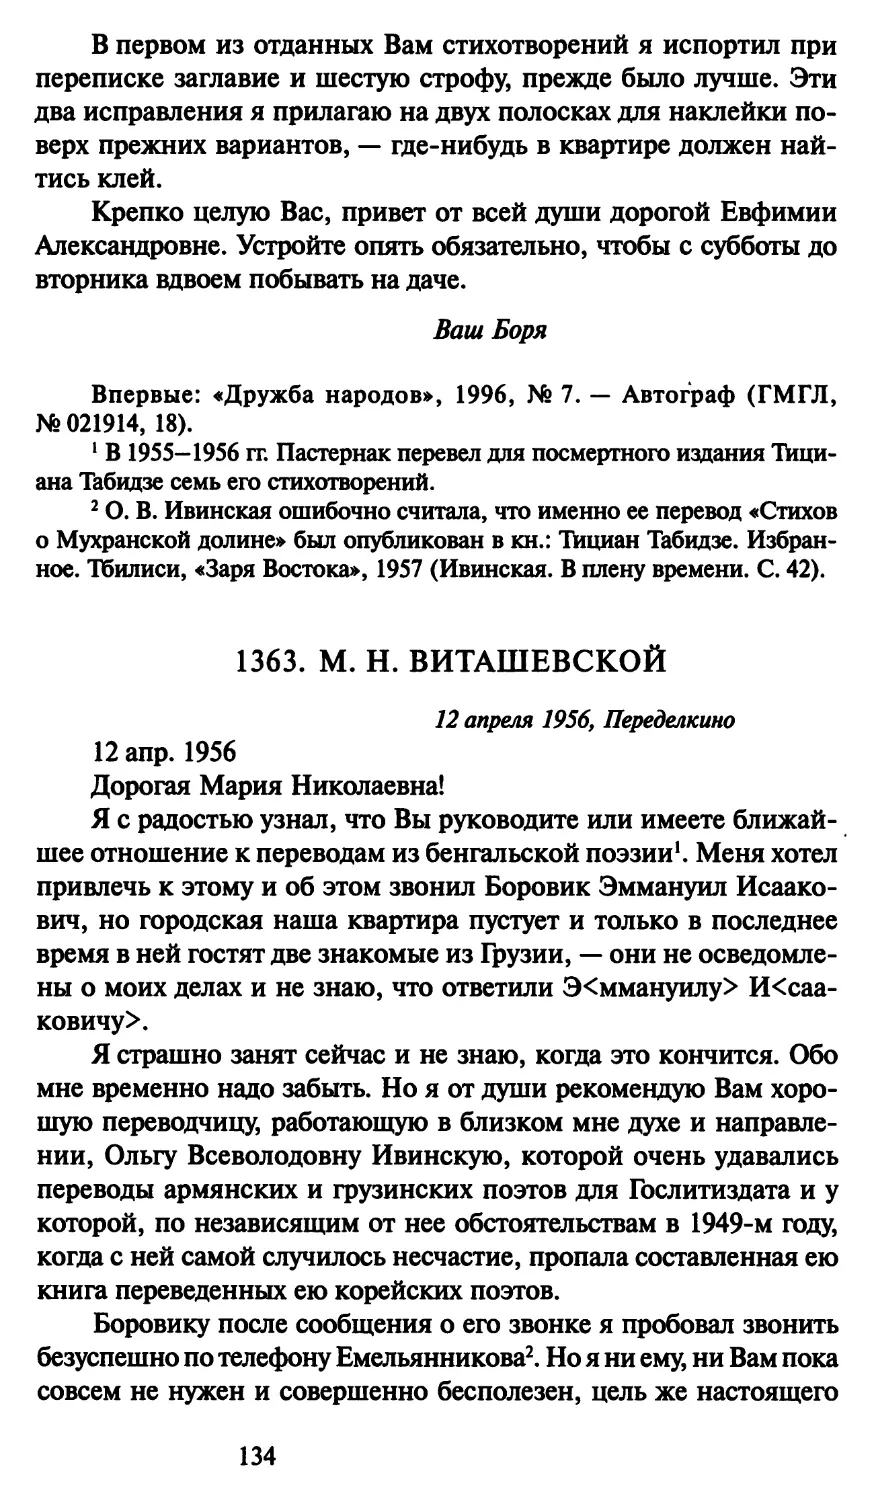 1363. М. Н. Виташевской 12 апреля 1956